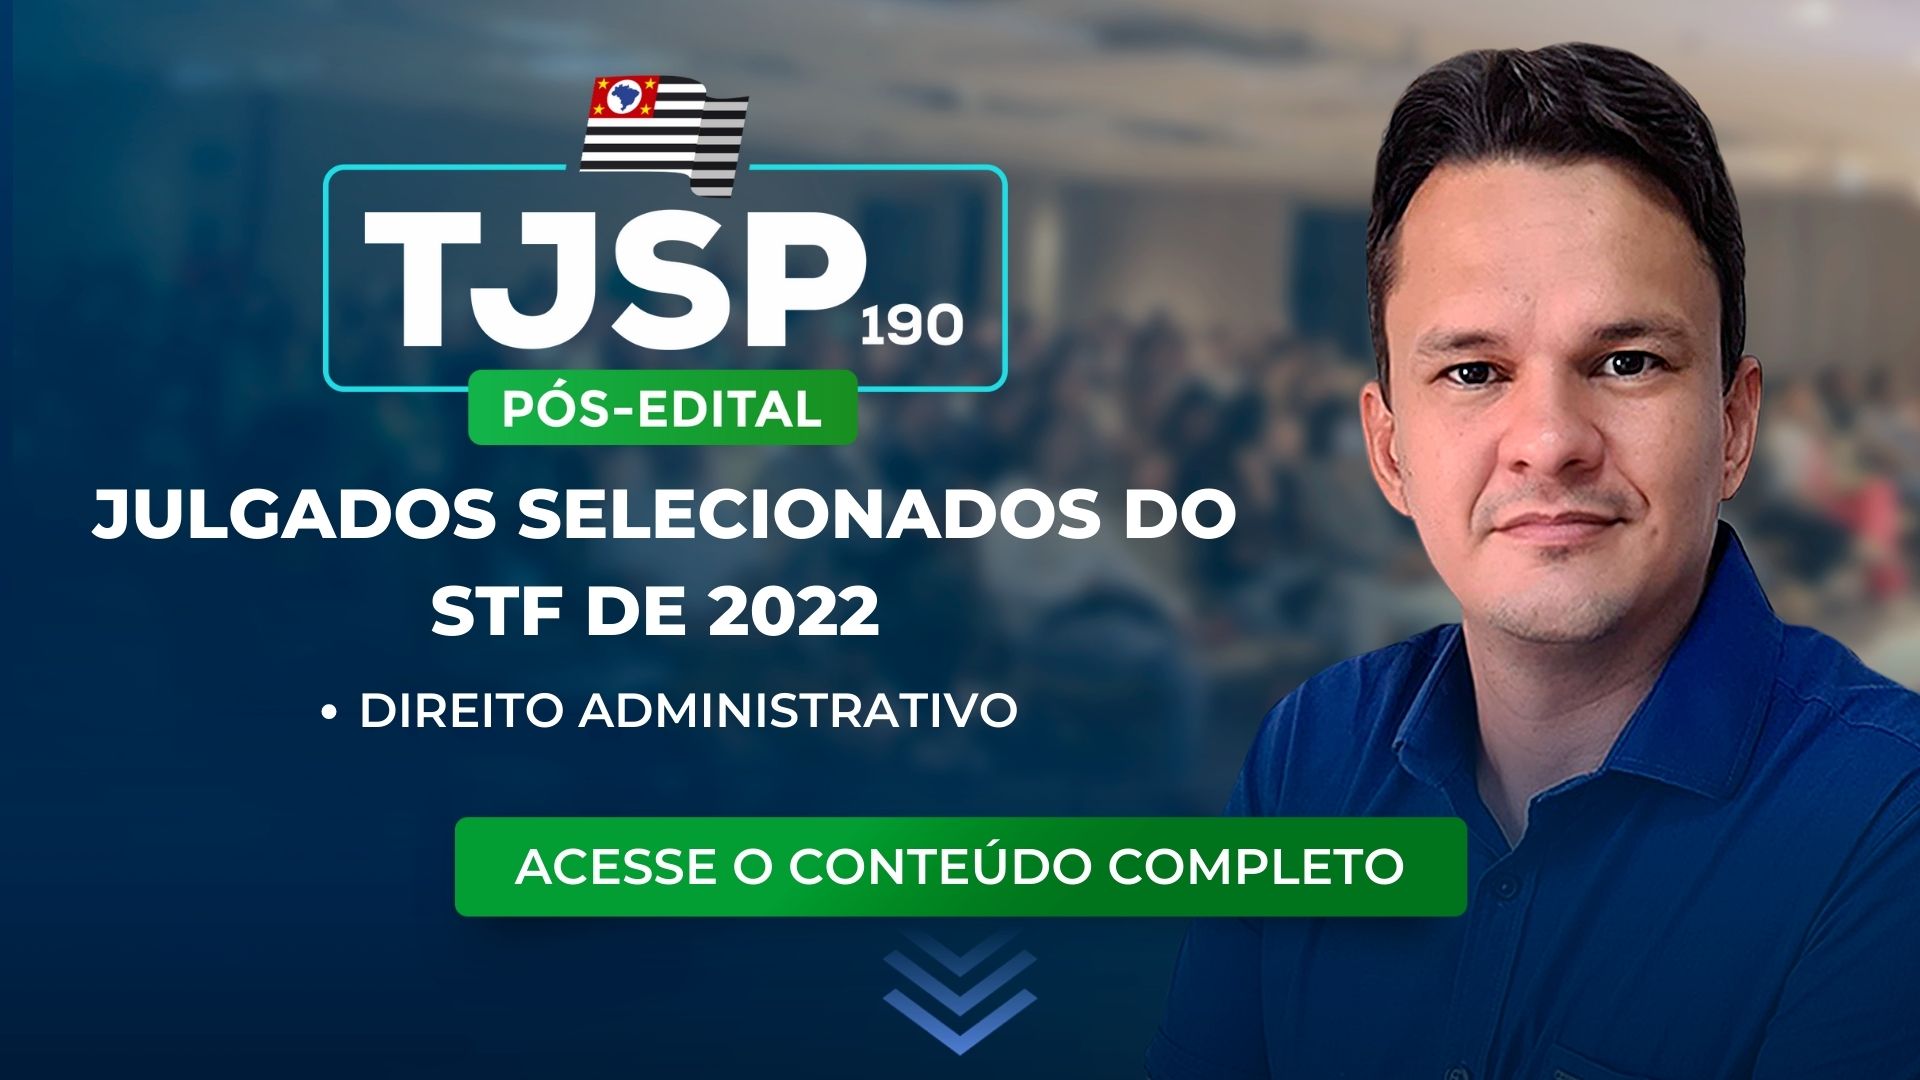 TJSP 190: julgados selecionados do STF de 2022 sobre Direito Administrativo